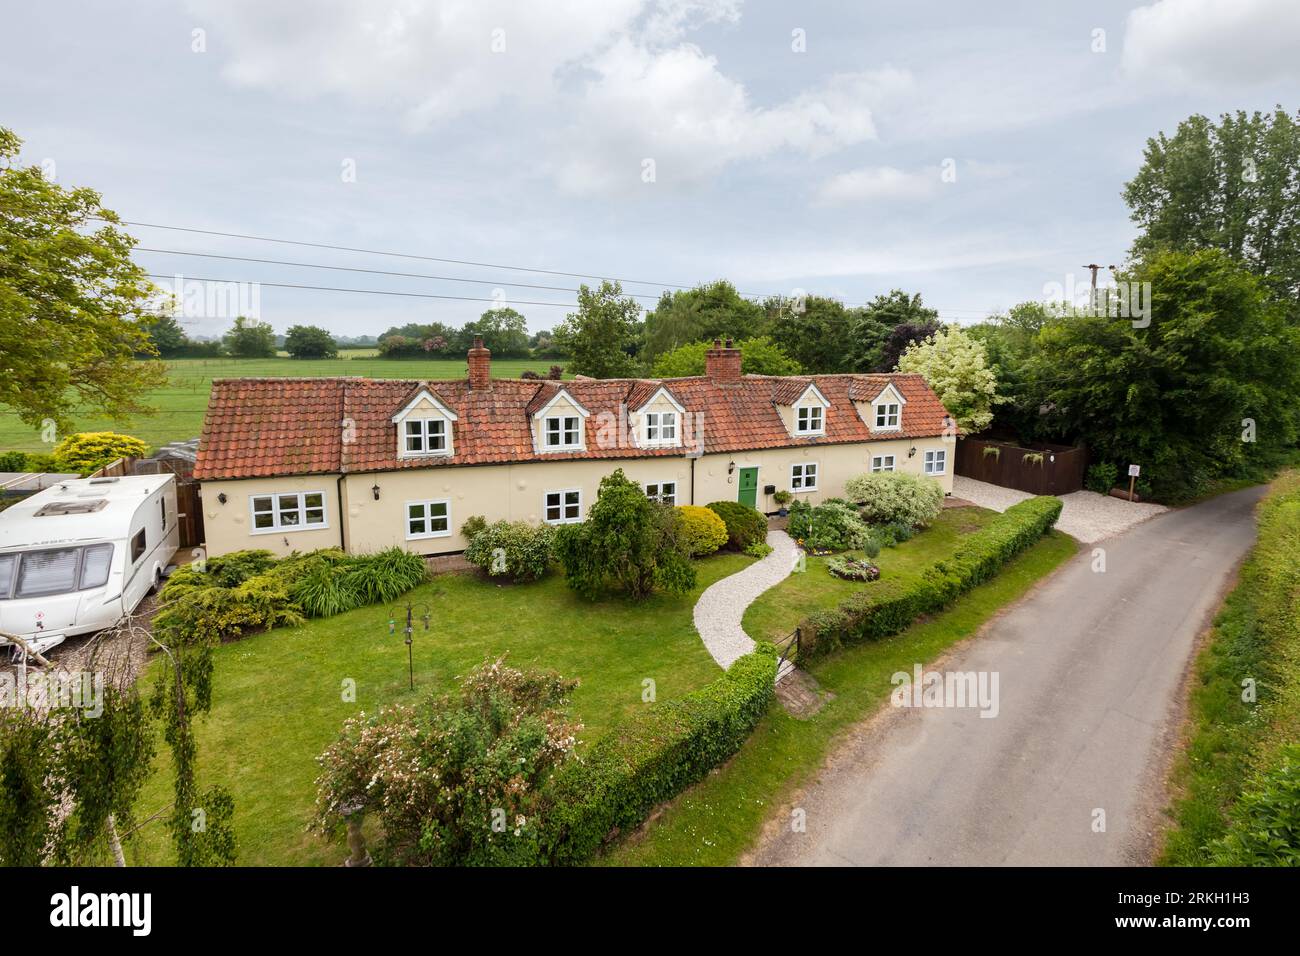 Mill View, Cowlinge, Suffolk, England - Mai 29 2018: Traditionelles ländliches suffolk-Cottage mit Blick von oben, mit Pantillendach und Landschaftsgarten Stockfoto